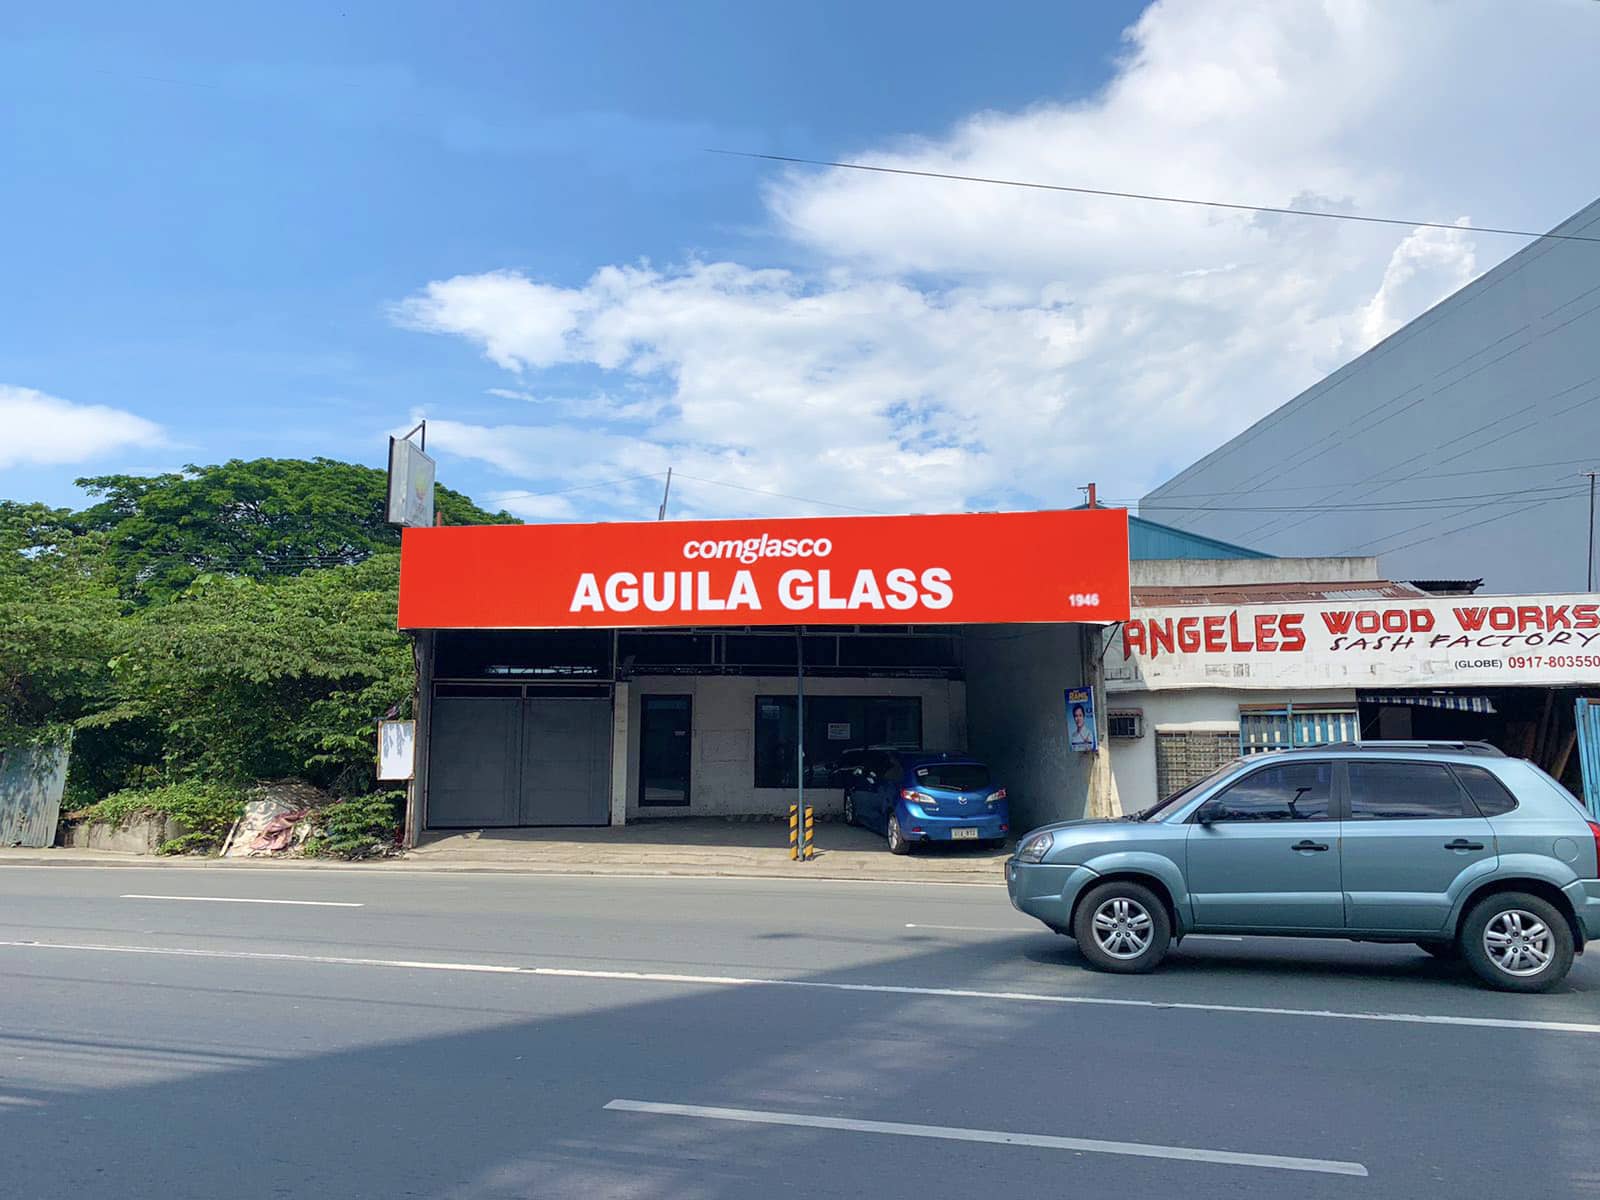 Comglasco Aguila Glass - STA. ROSA BRANCH